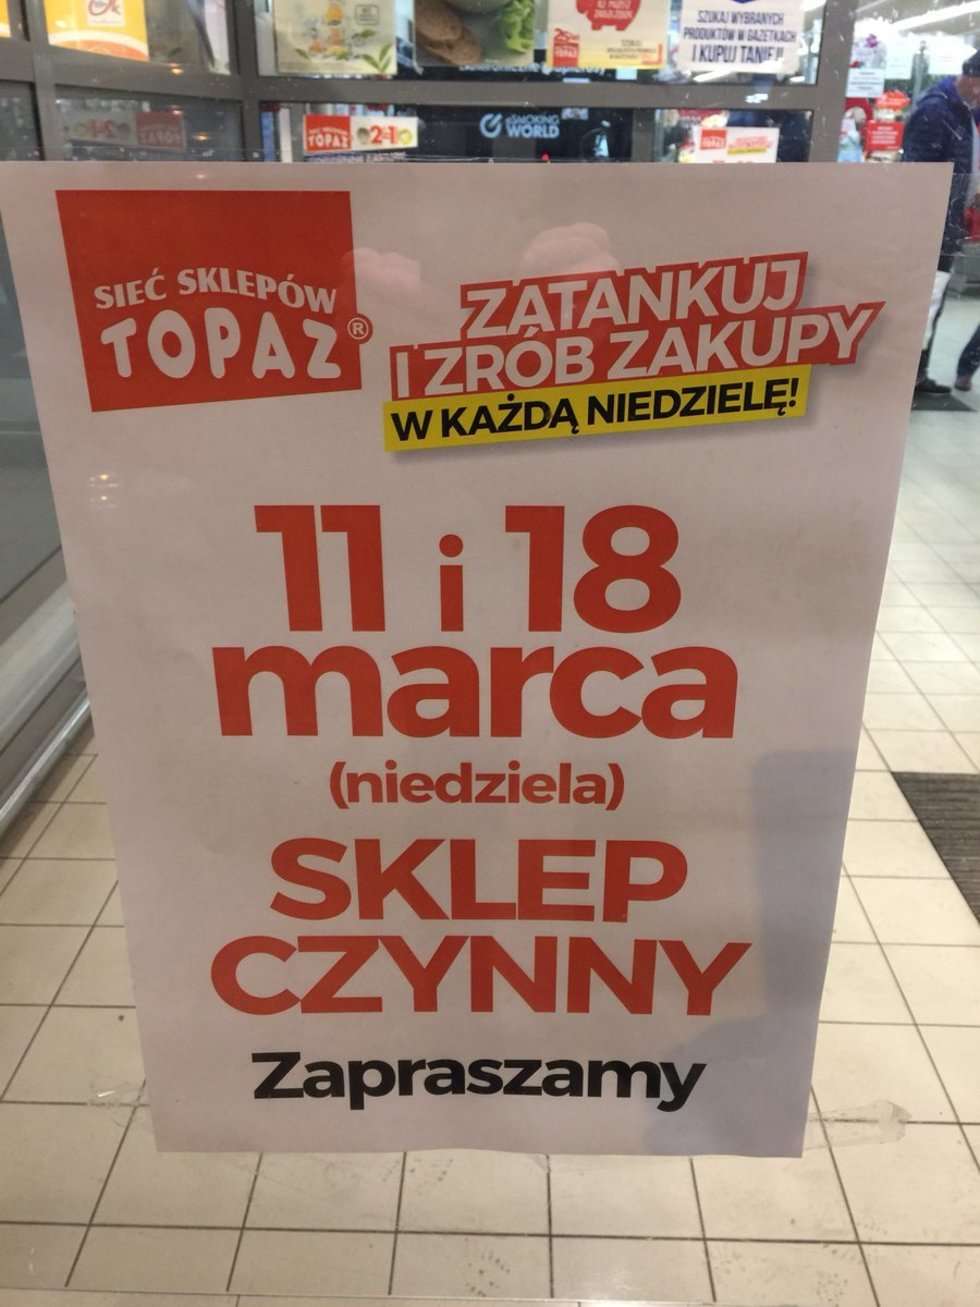  Sklep Topaz otwarty w niedzielę bez handlu  - Autor: Jakub Oworuszko